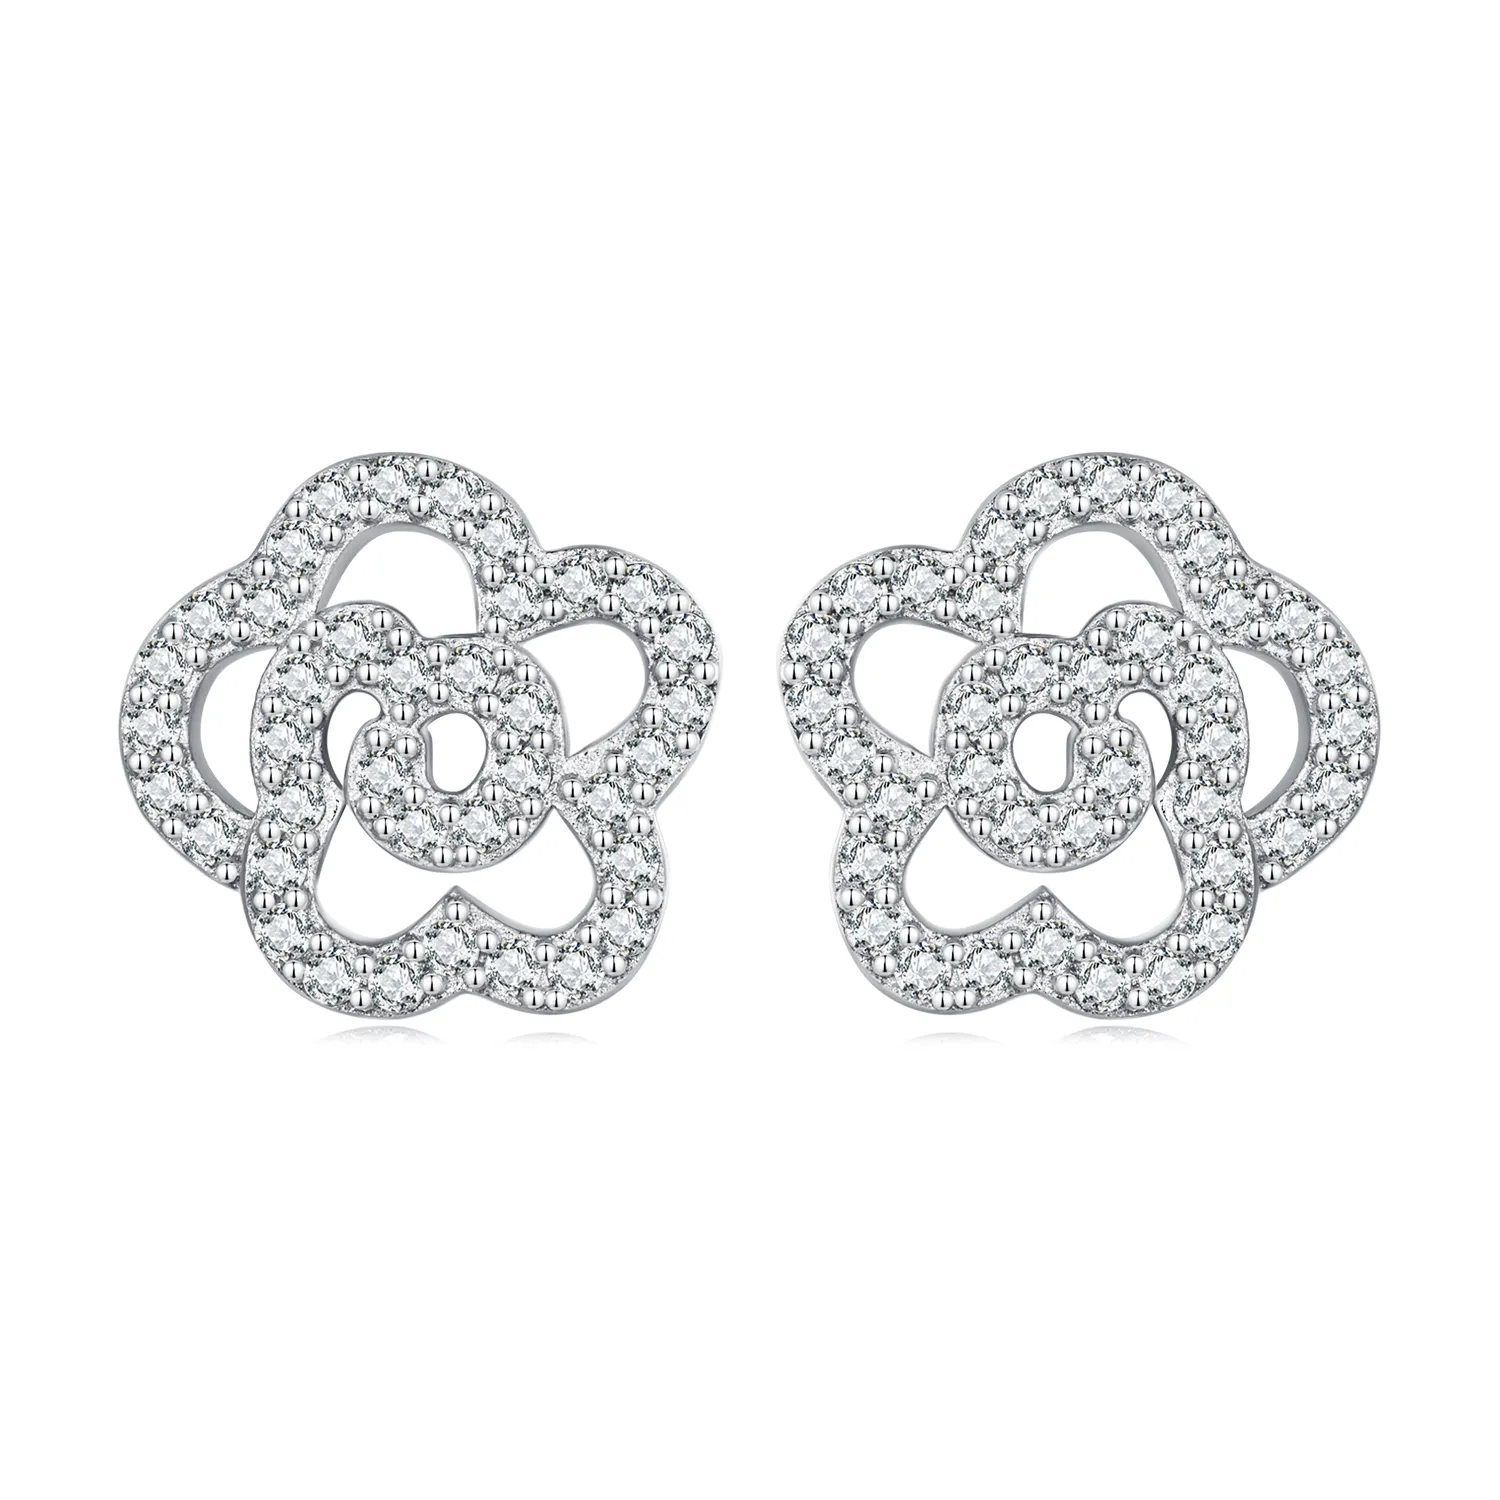 Boucles d'oreilles en forme de Rose creuse en argent 925, petites boucles d'oreilles simples et fraîches plaquées de platine BSE712